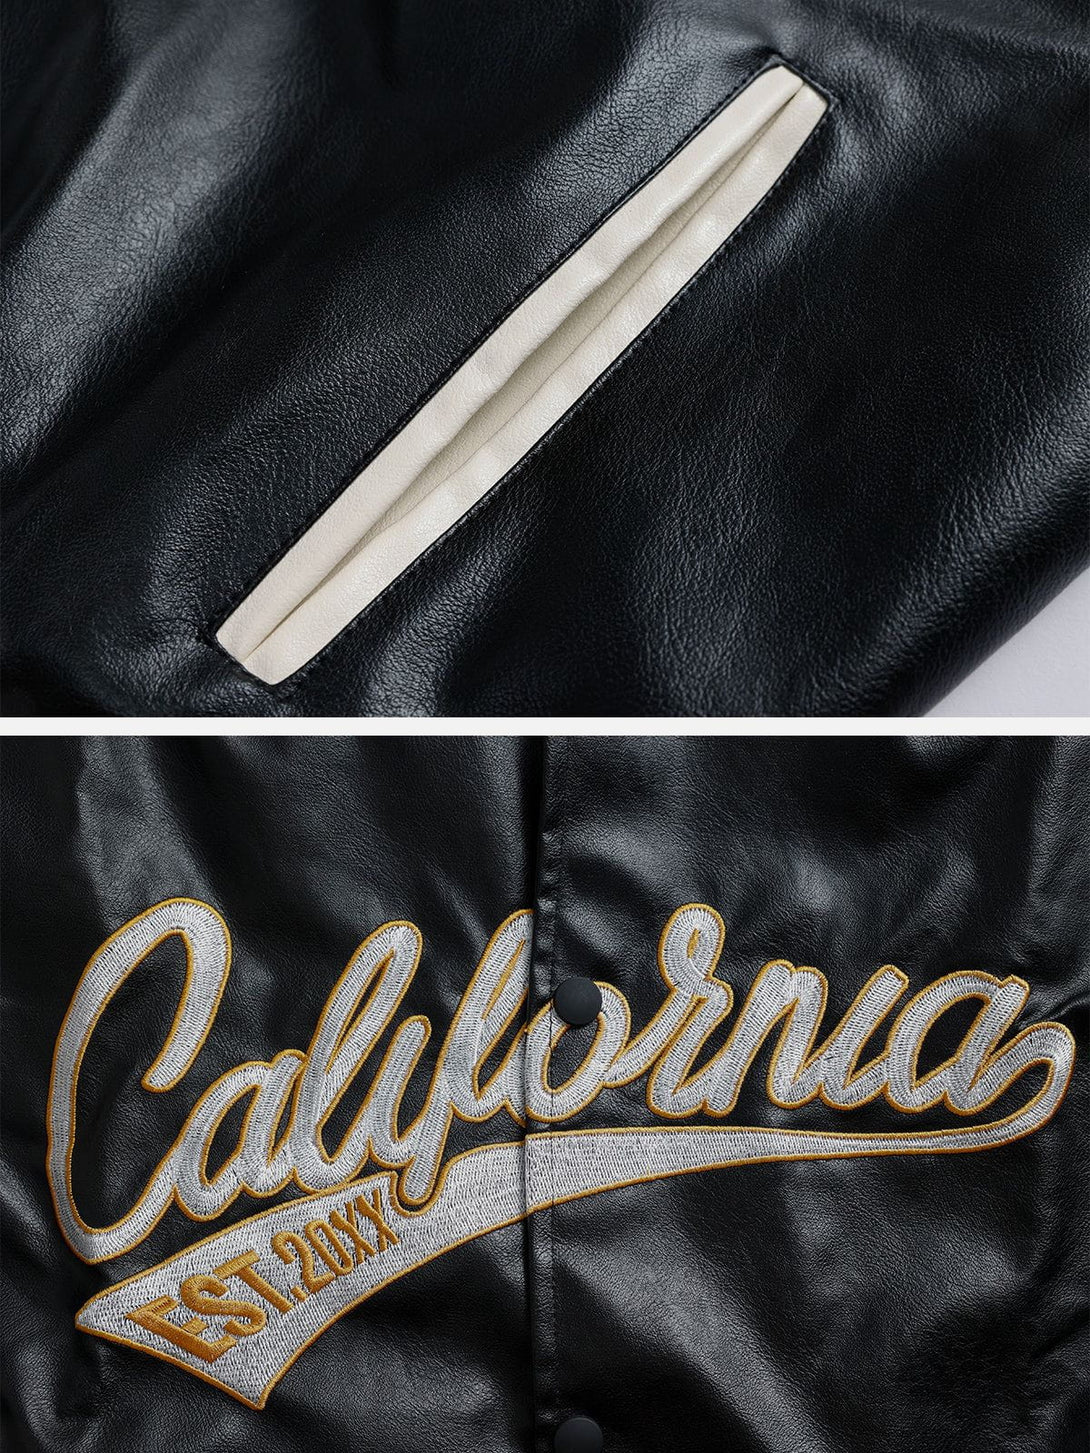 Levefly - "California" PU Stitching Varsity Jacket - Streetwear Fashion - levefly.com